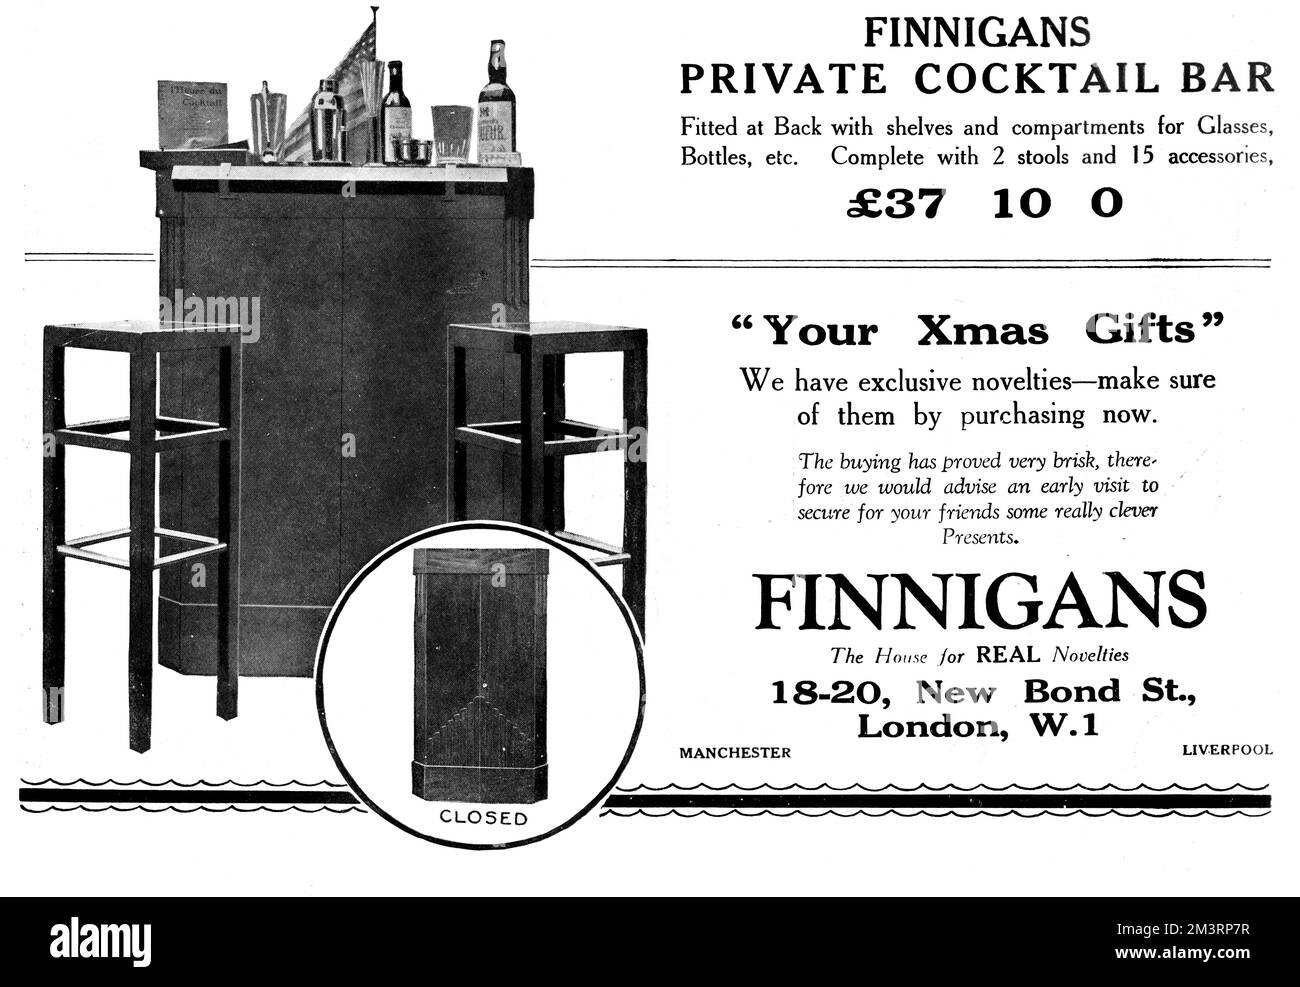 Spot in bianco e nero nello Sketch per i Finnigans di New Bond Street, Londra, con il loro cocktail Bar privato che era '...dotato sul retro di mensole e scomparti per bicchieri, bottiglie, ecc. Completo di 2 sgabelli e 15 accessori', il tutto per la somma di 37 10 scellini. Data: 12th dicembre 1928 Foto Stock